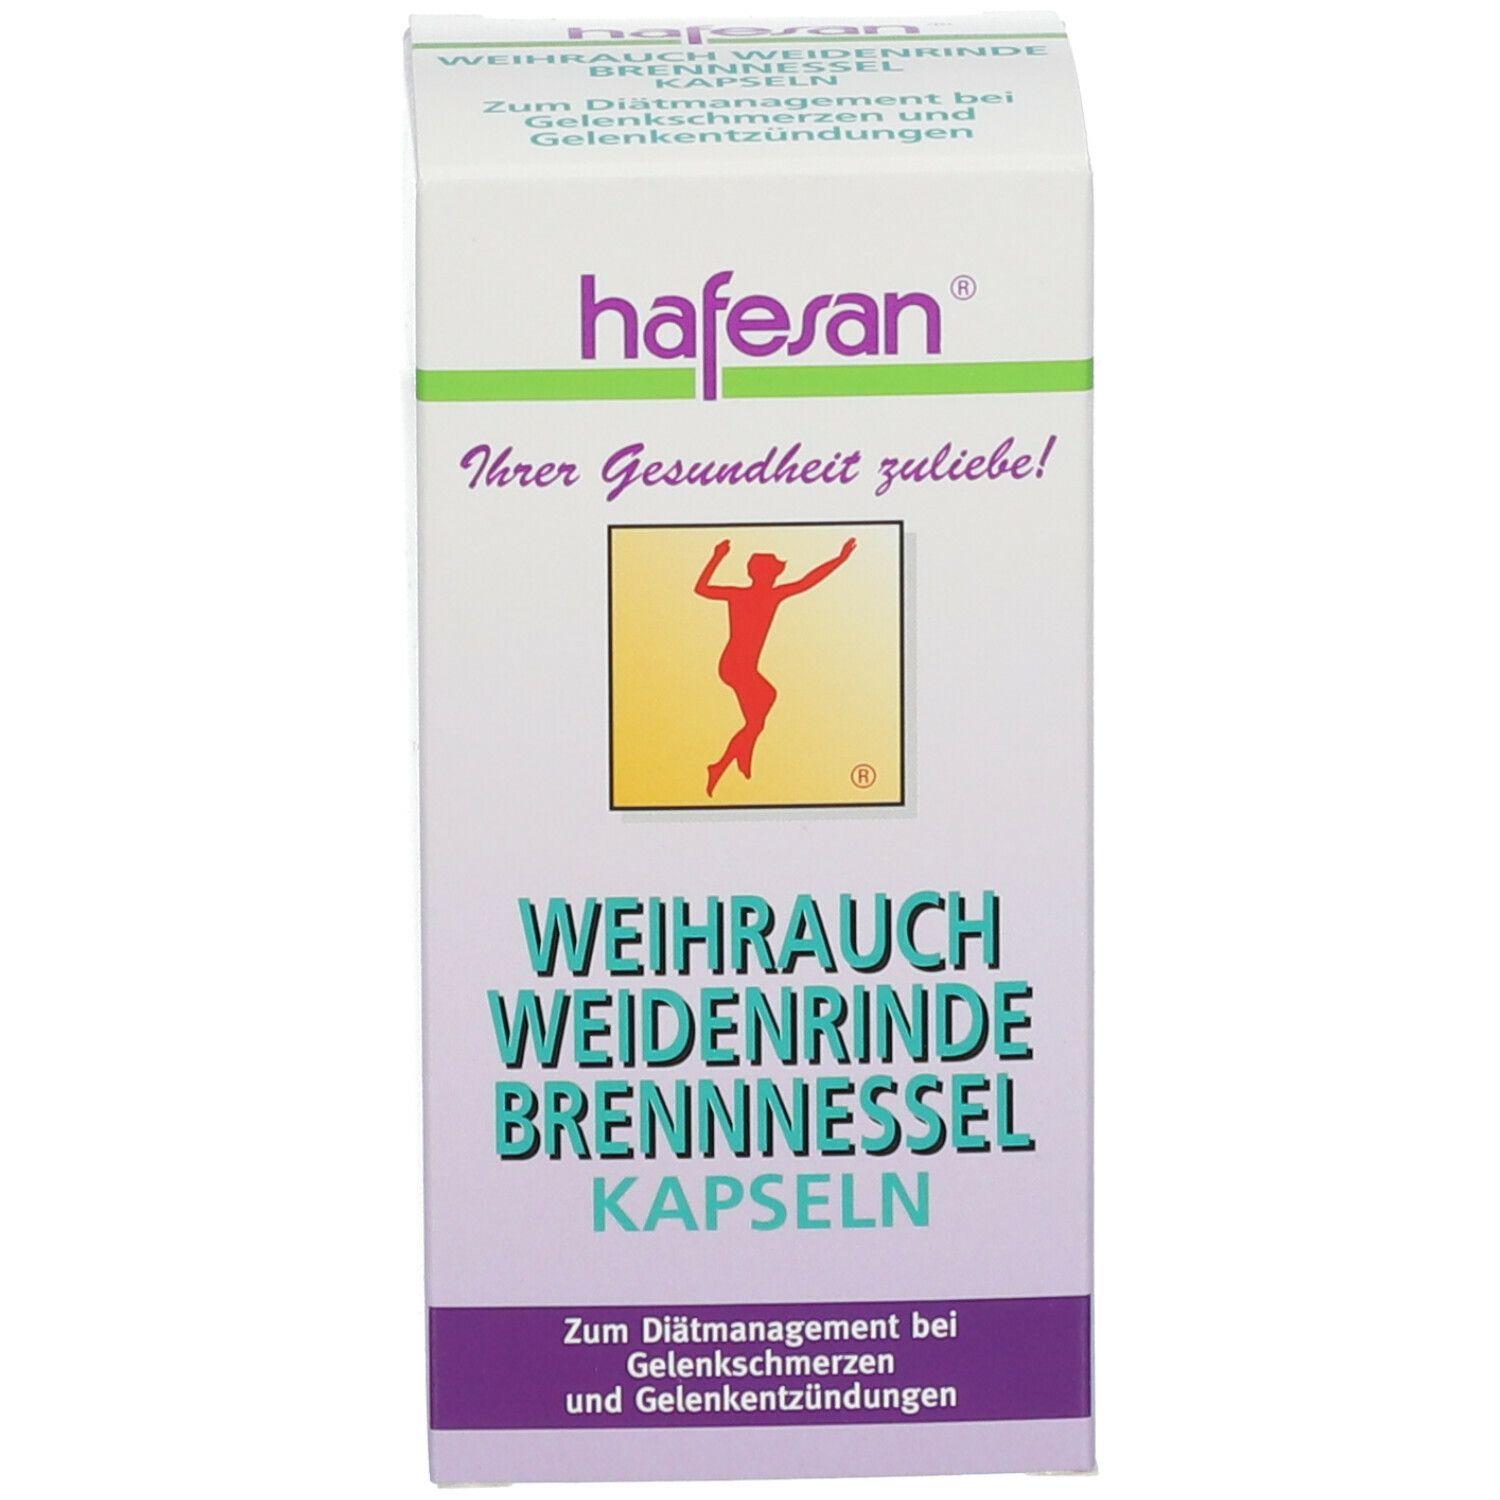 hafesan® Weihrauch Weidenrinde Brennessel